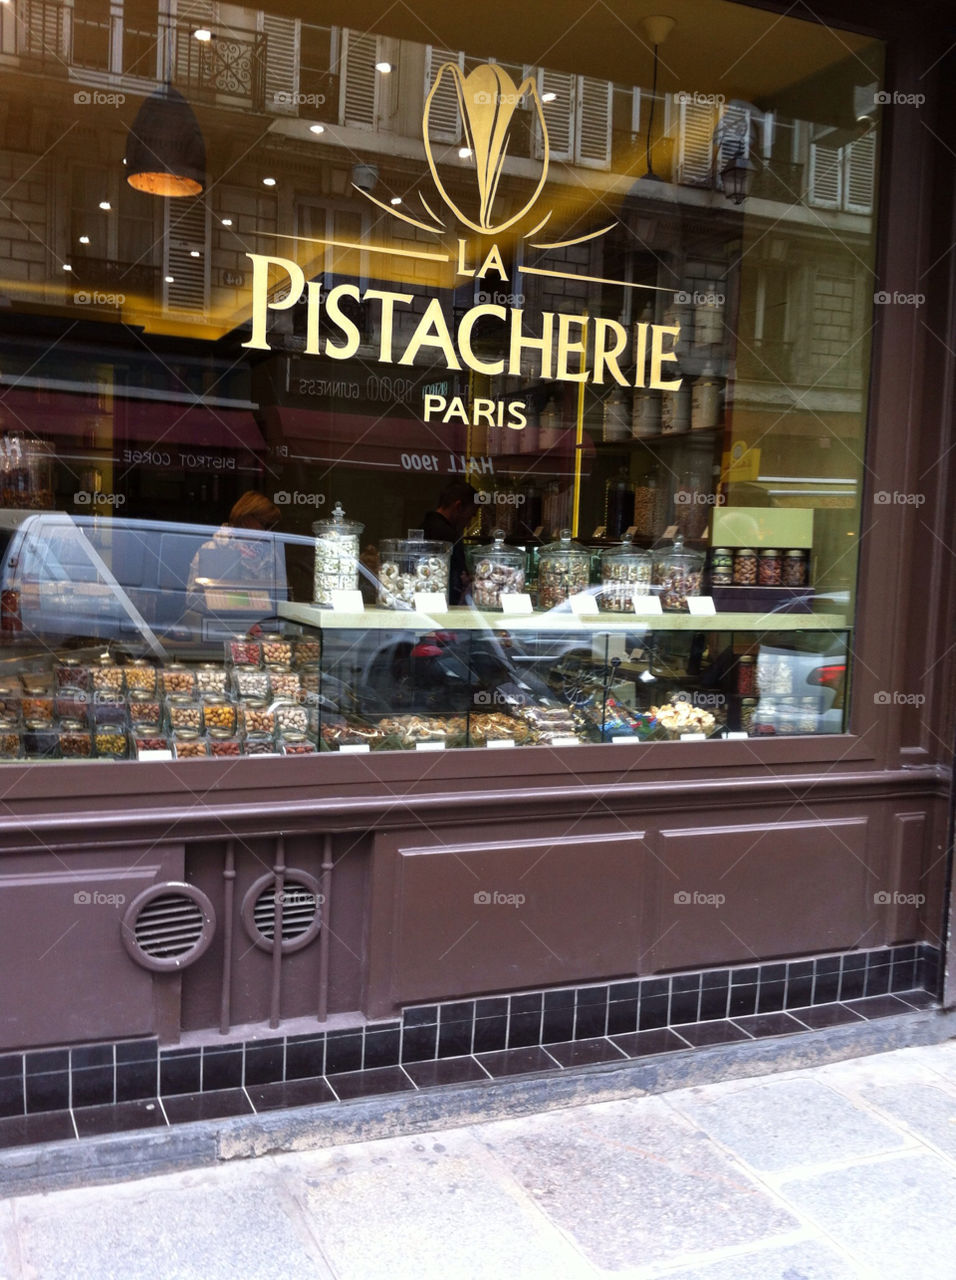 shop nut pistachio pistacherie by mos2566